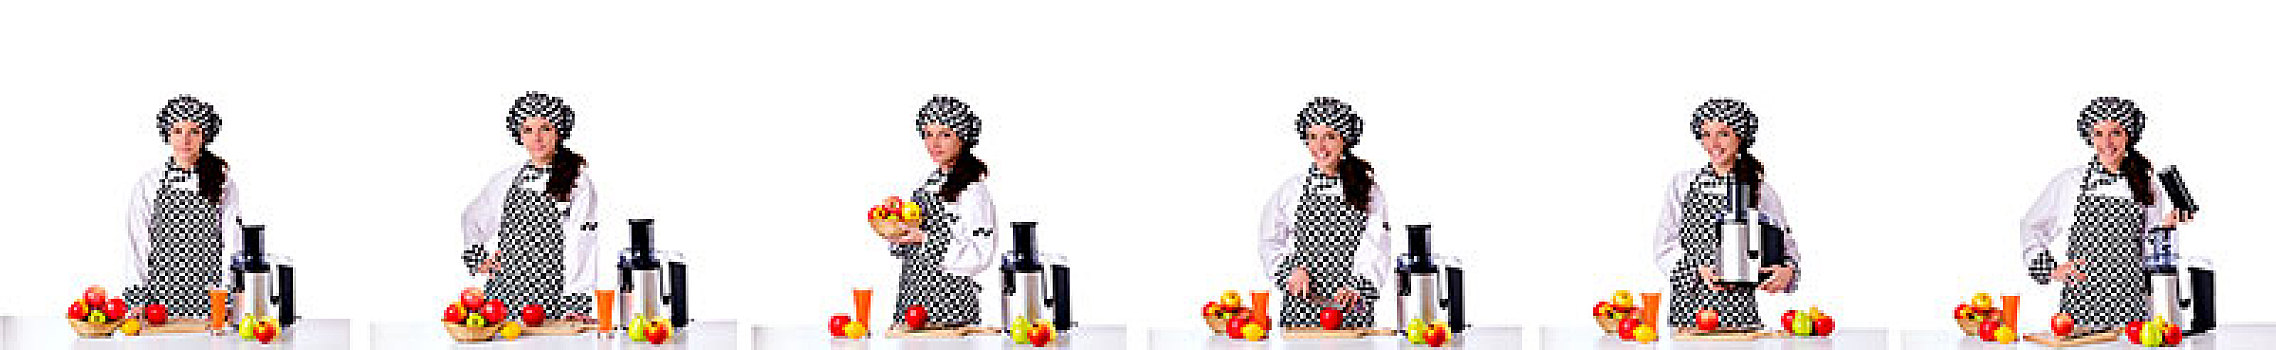 女性,厨师,水果,隔绝,白色背景